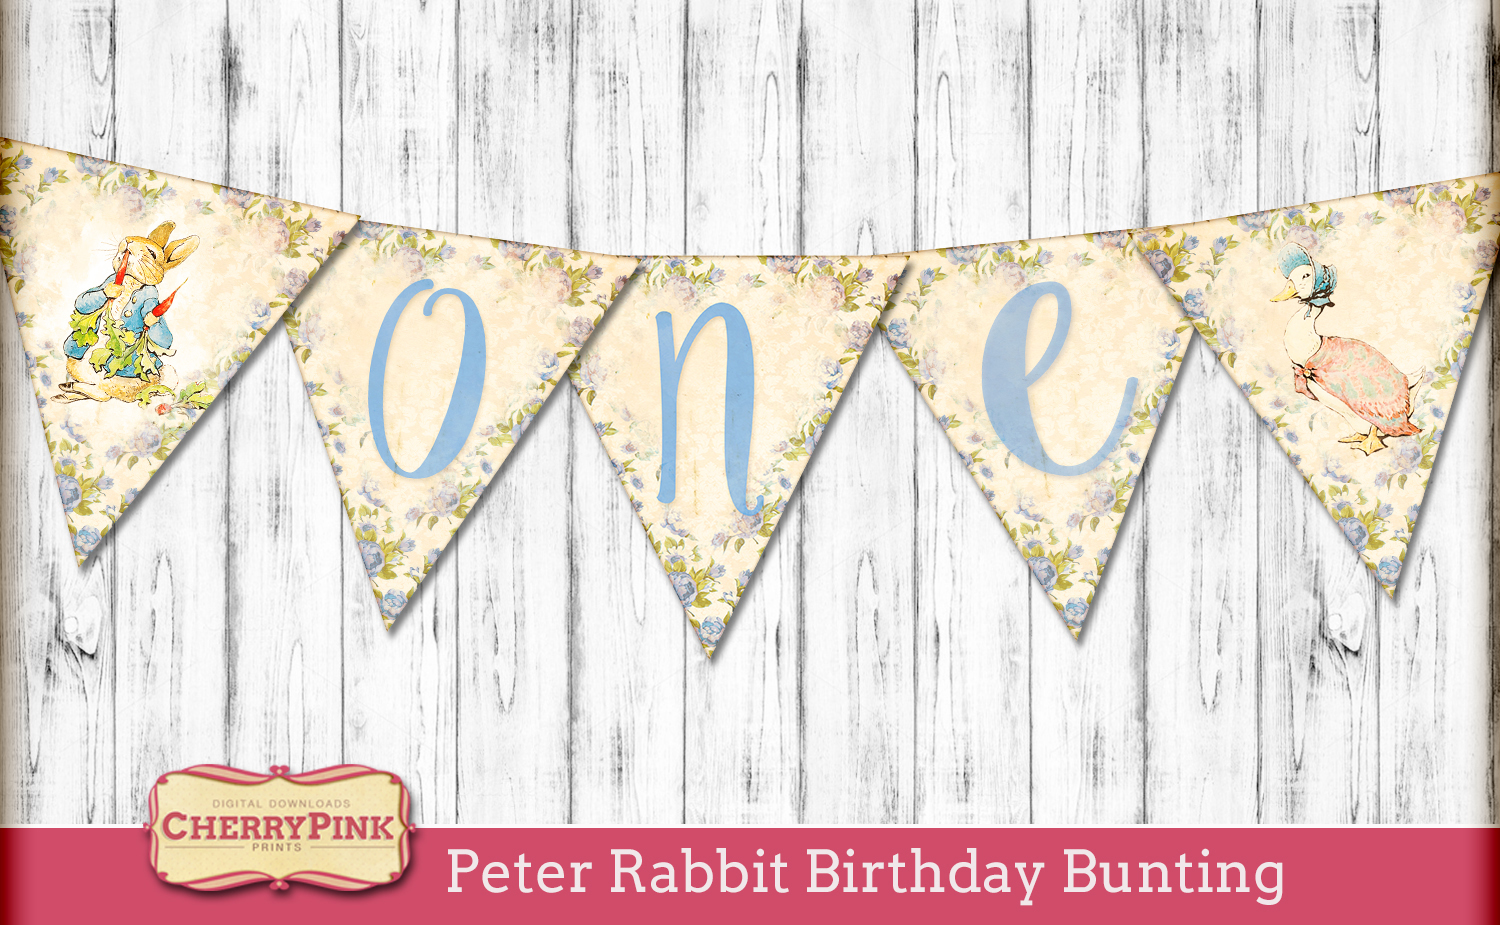 Peter Rabbit Birthday Bunting